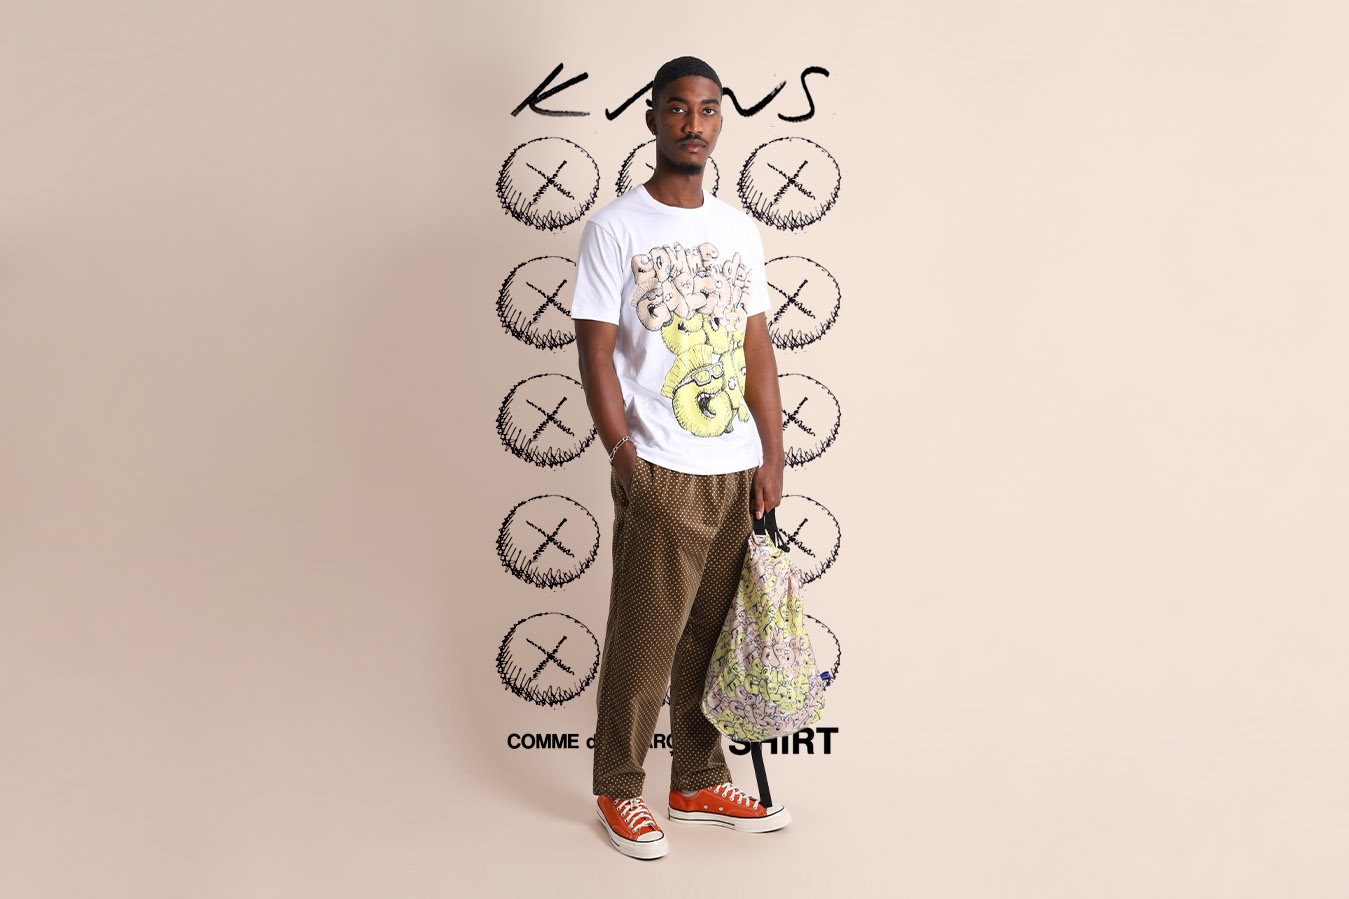 The Comme des Garçons Shirt x Kaws Collaboration